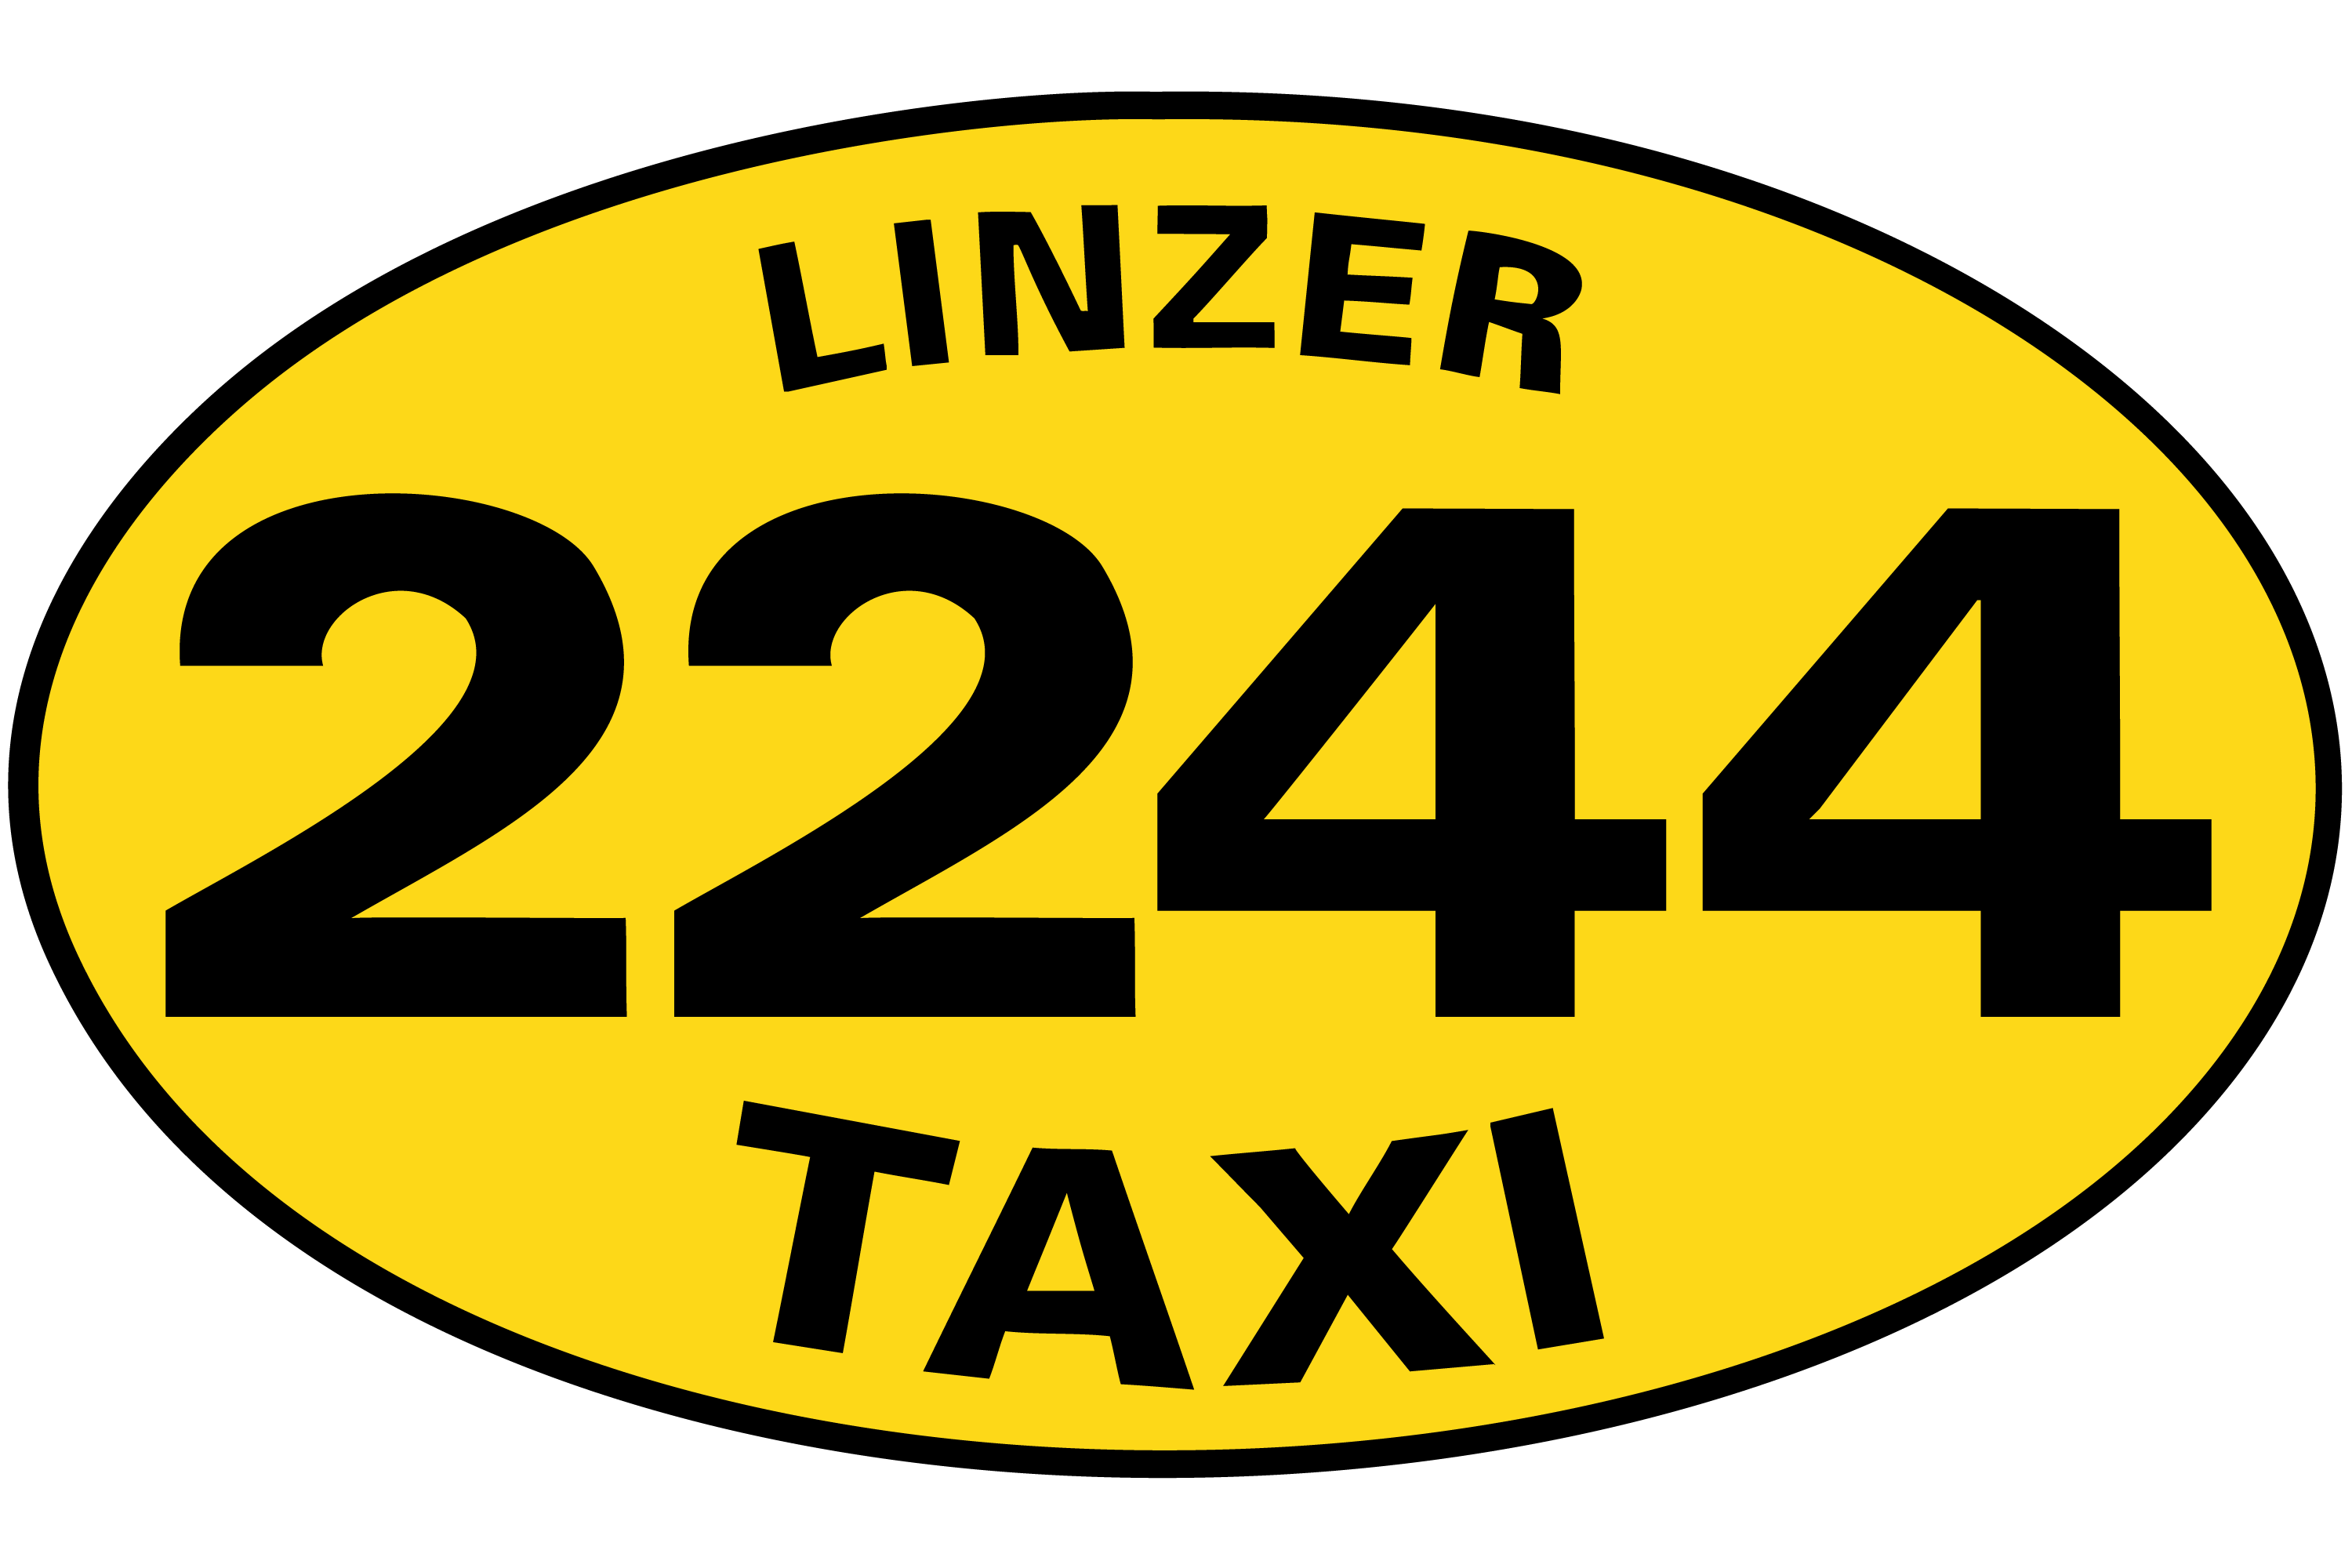 Taxi2244 Logo